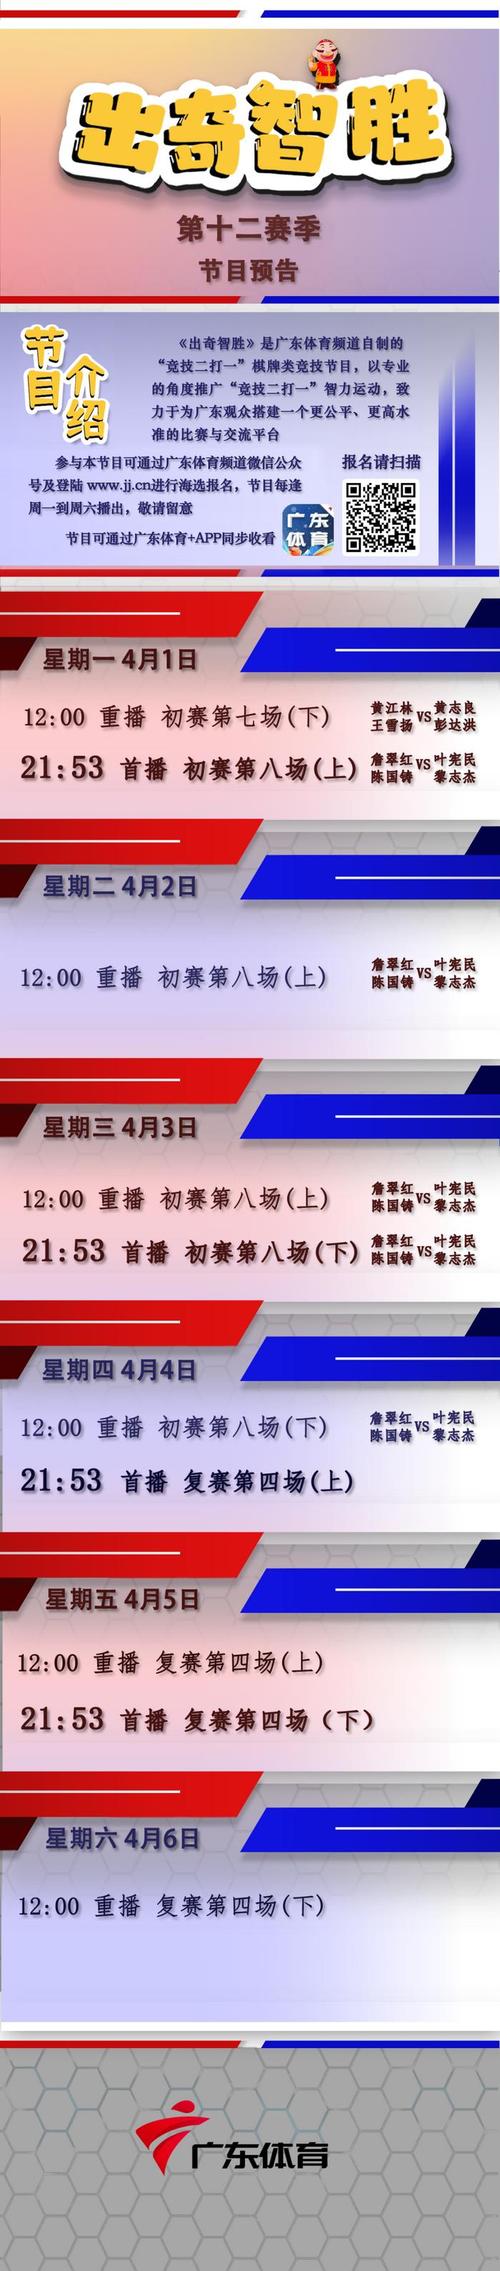 广东体育节目表